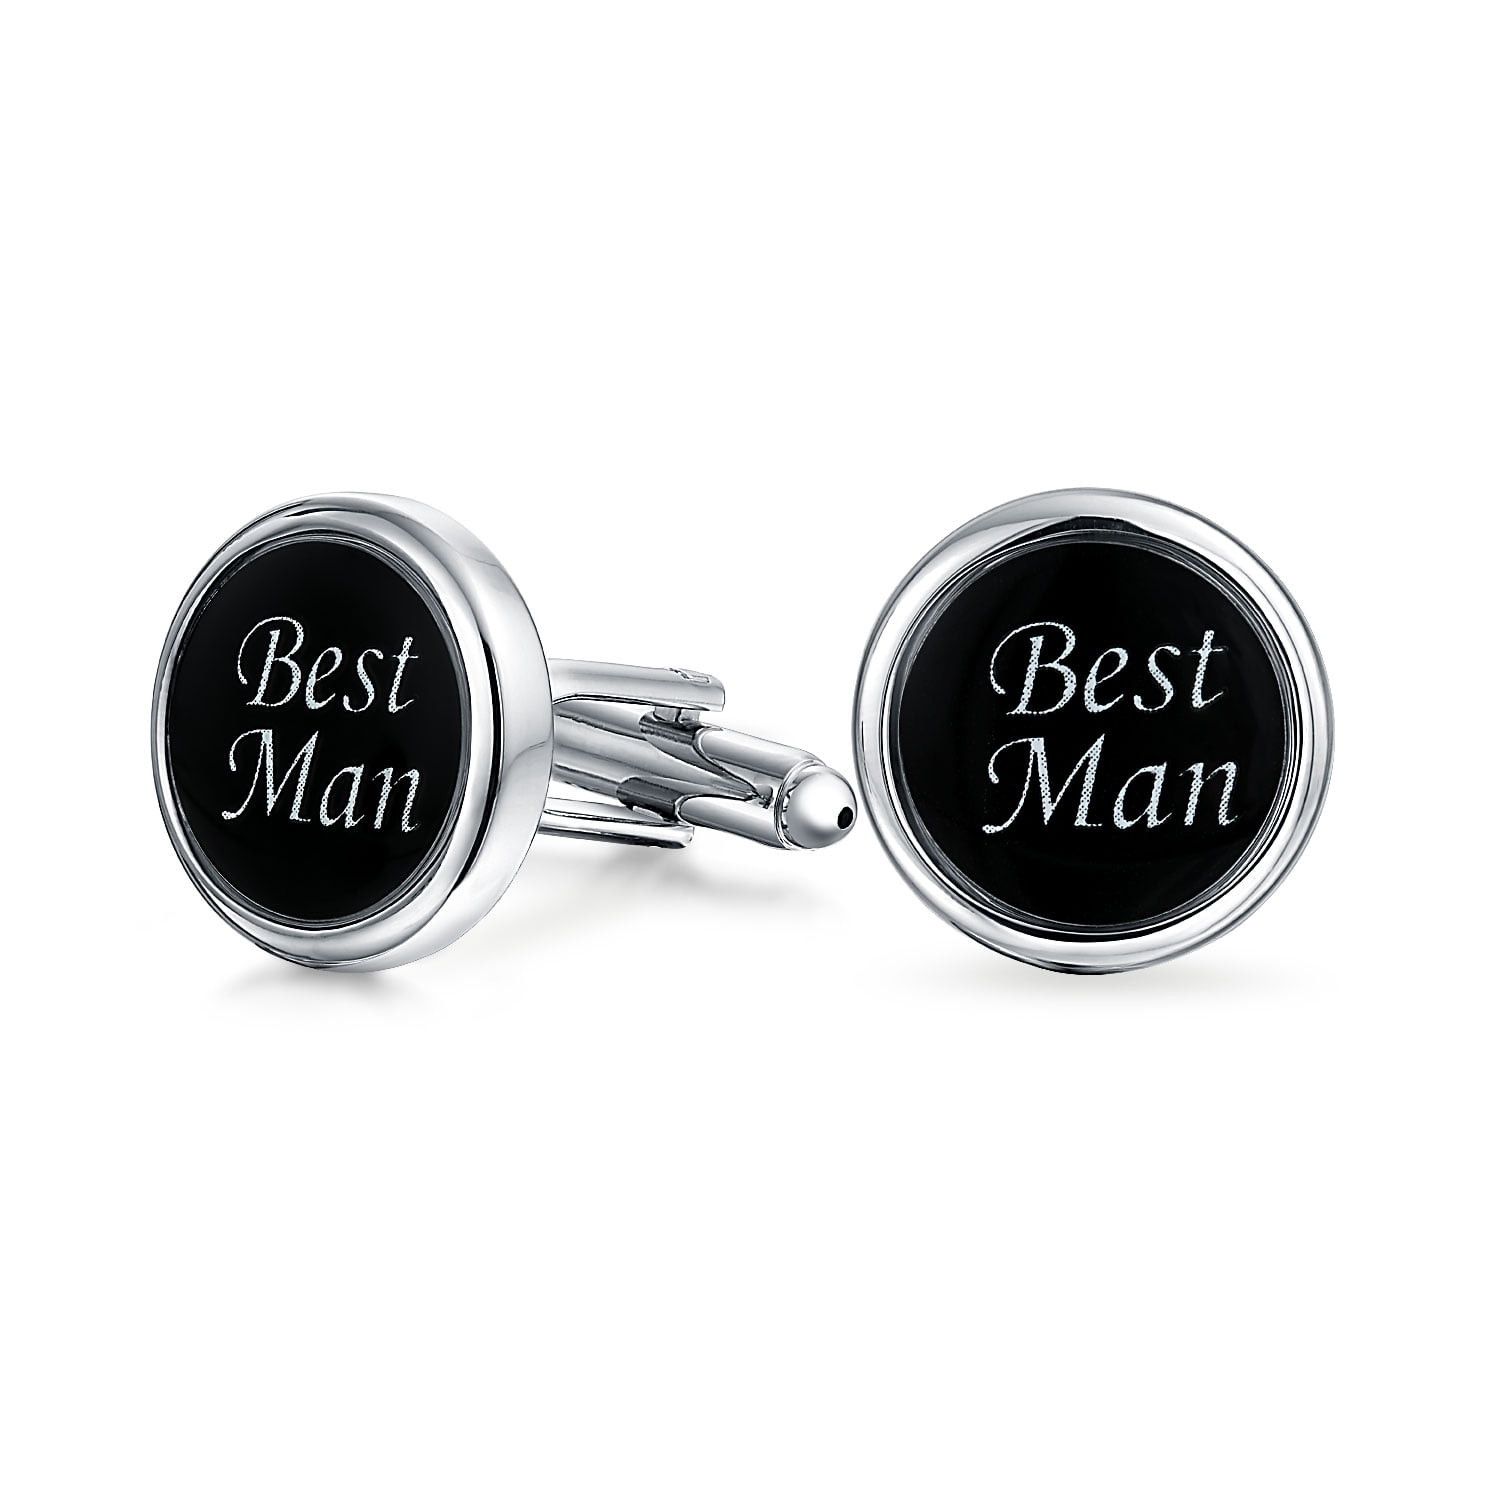 9 mm Nickel Bullet Engraved Personalized Bullet Cufflinks Wedding Gift Groomsman Best Man